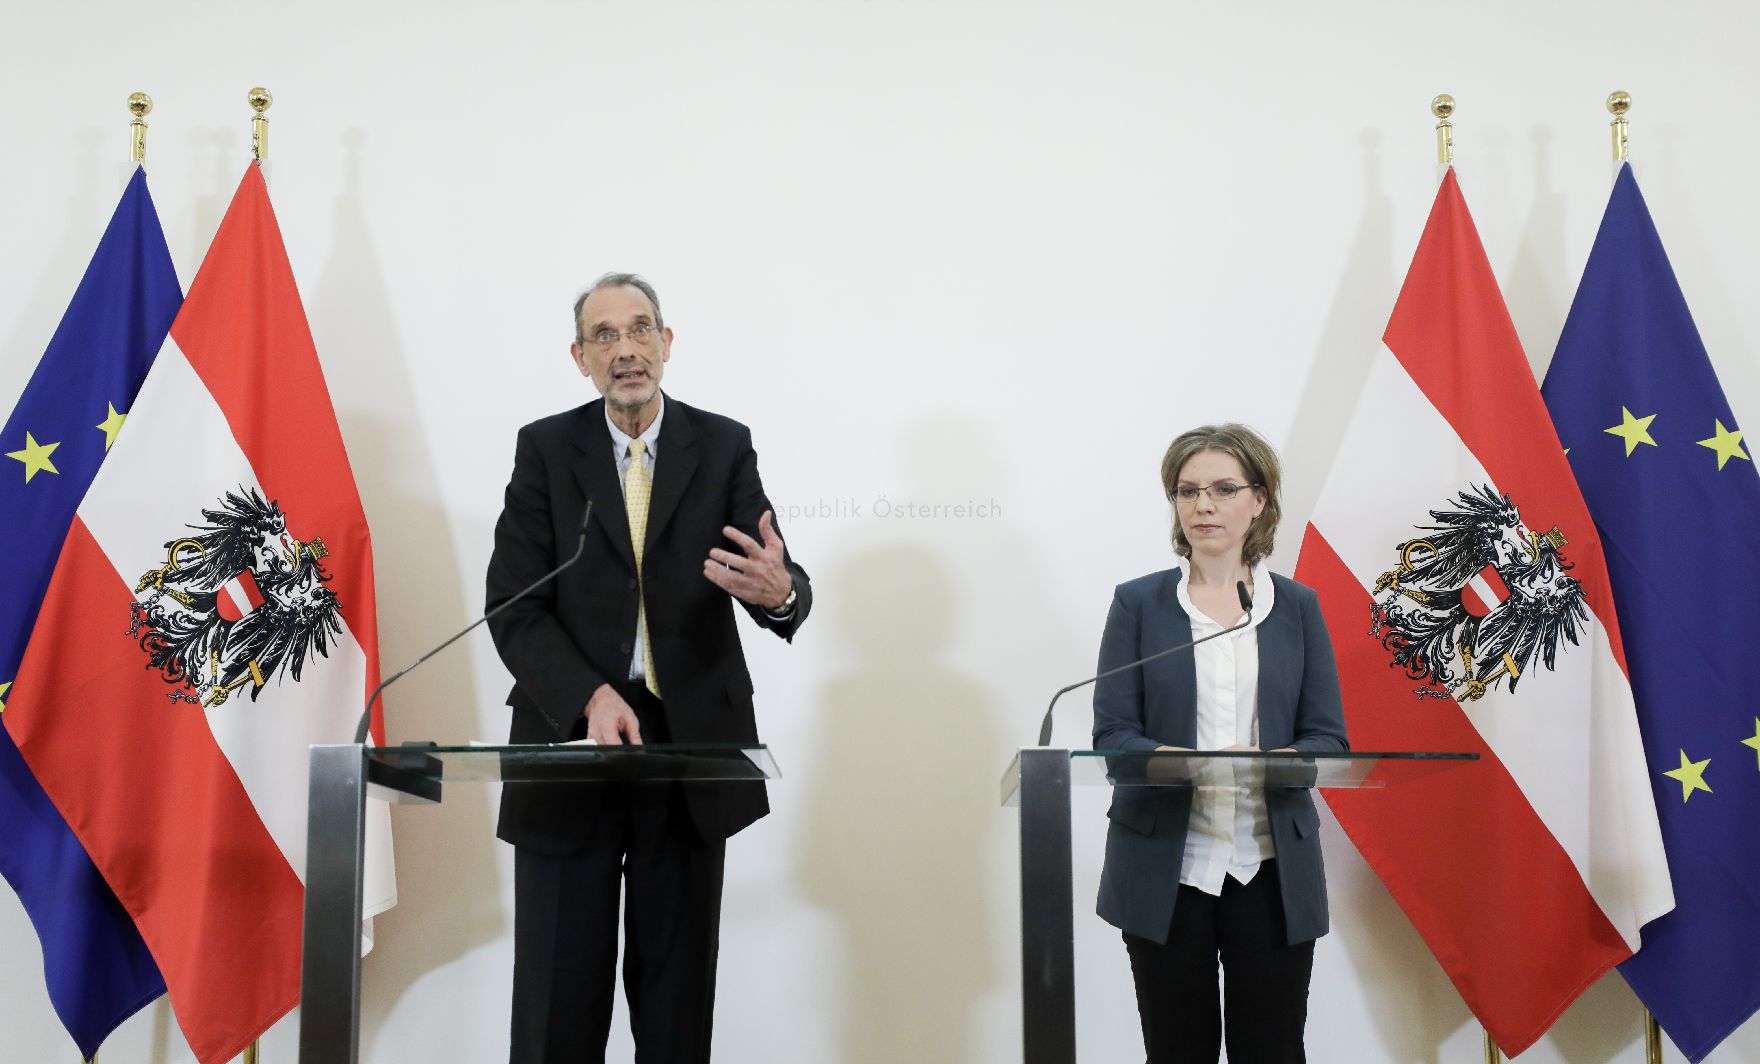 Bundesminister Heinz Faßmann (l.) und Bundesministerin Leonore Gewessler (r.) beim Pressefoyer nach dem Ministerrat am 12. Februar 2020.